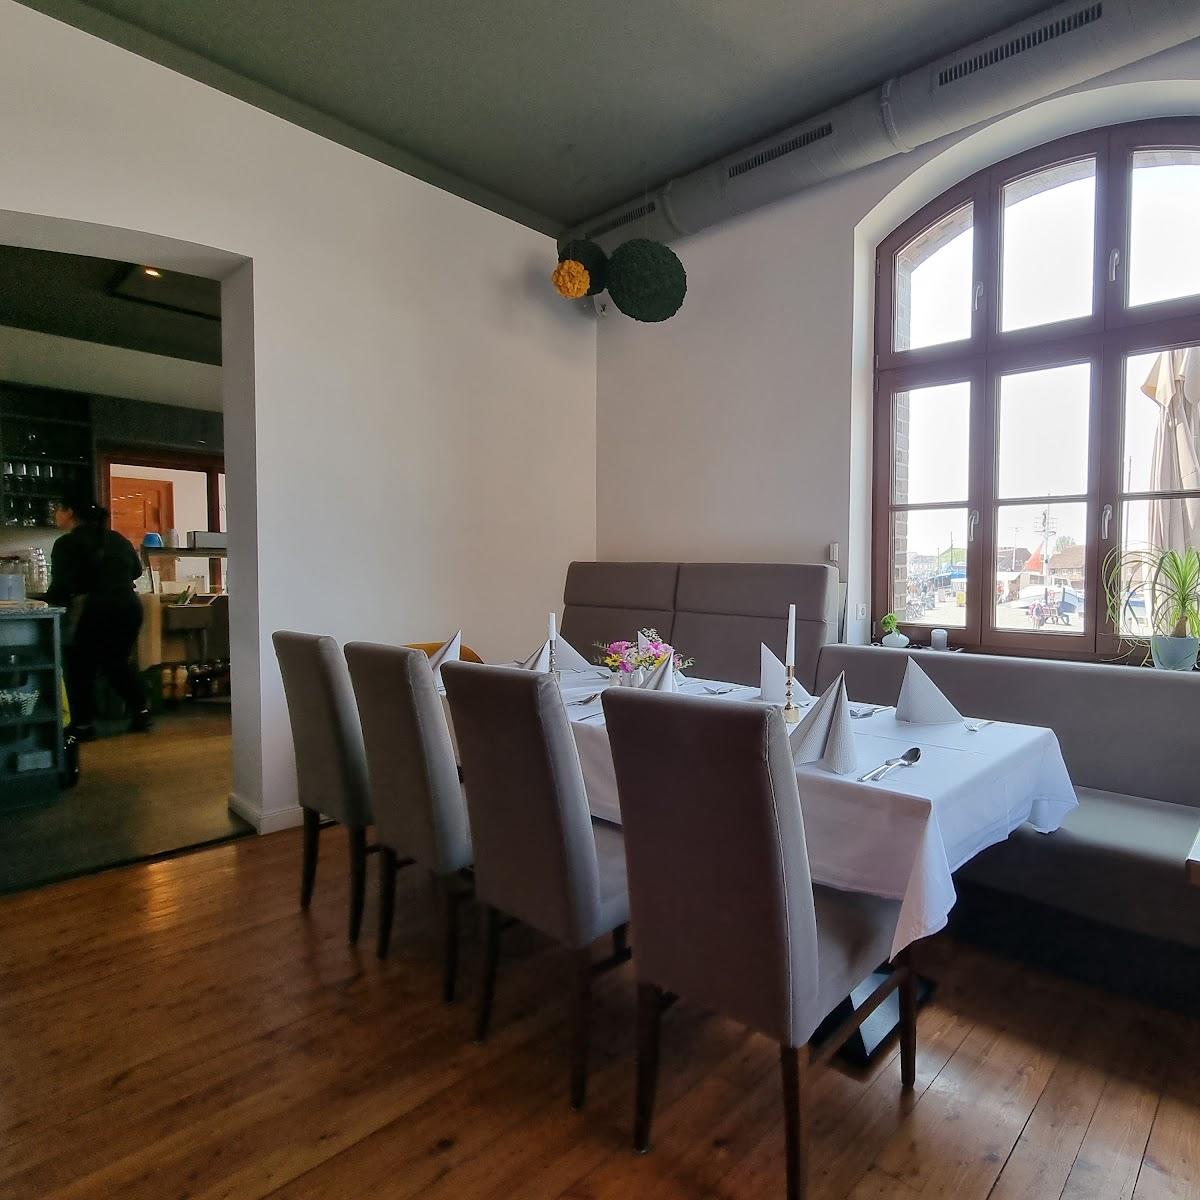 Restaurant "IL Casale | Italienisches Restaurant und Eiscafé im Zollhaus" in Wismar